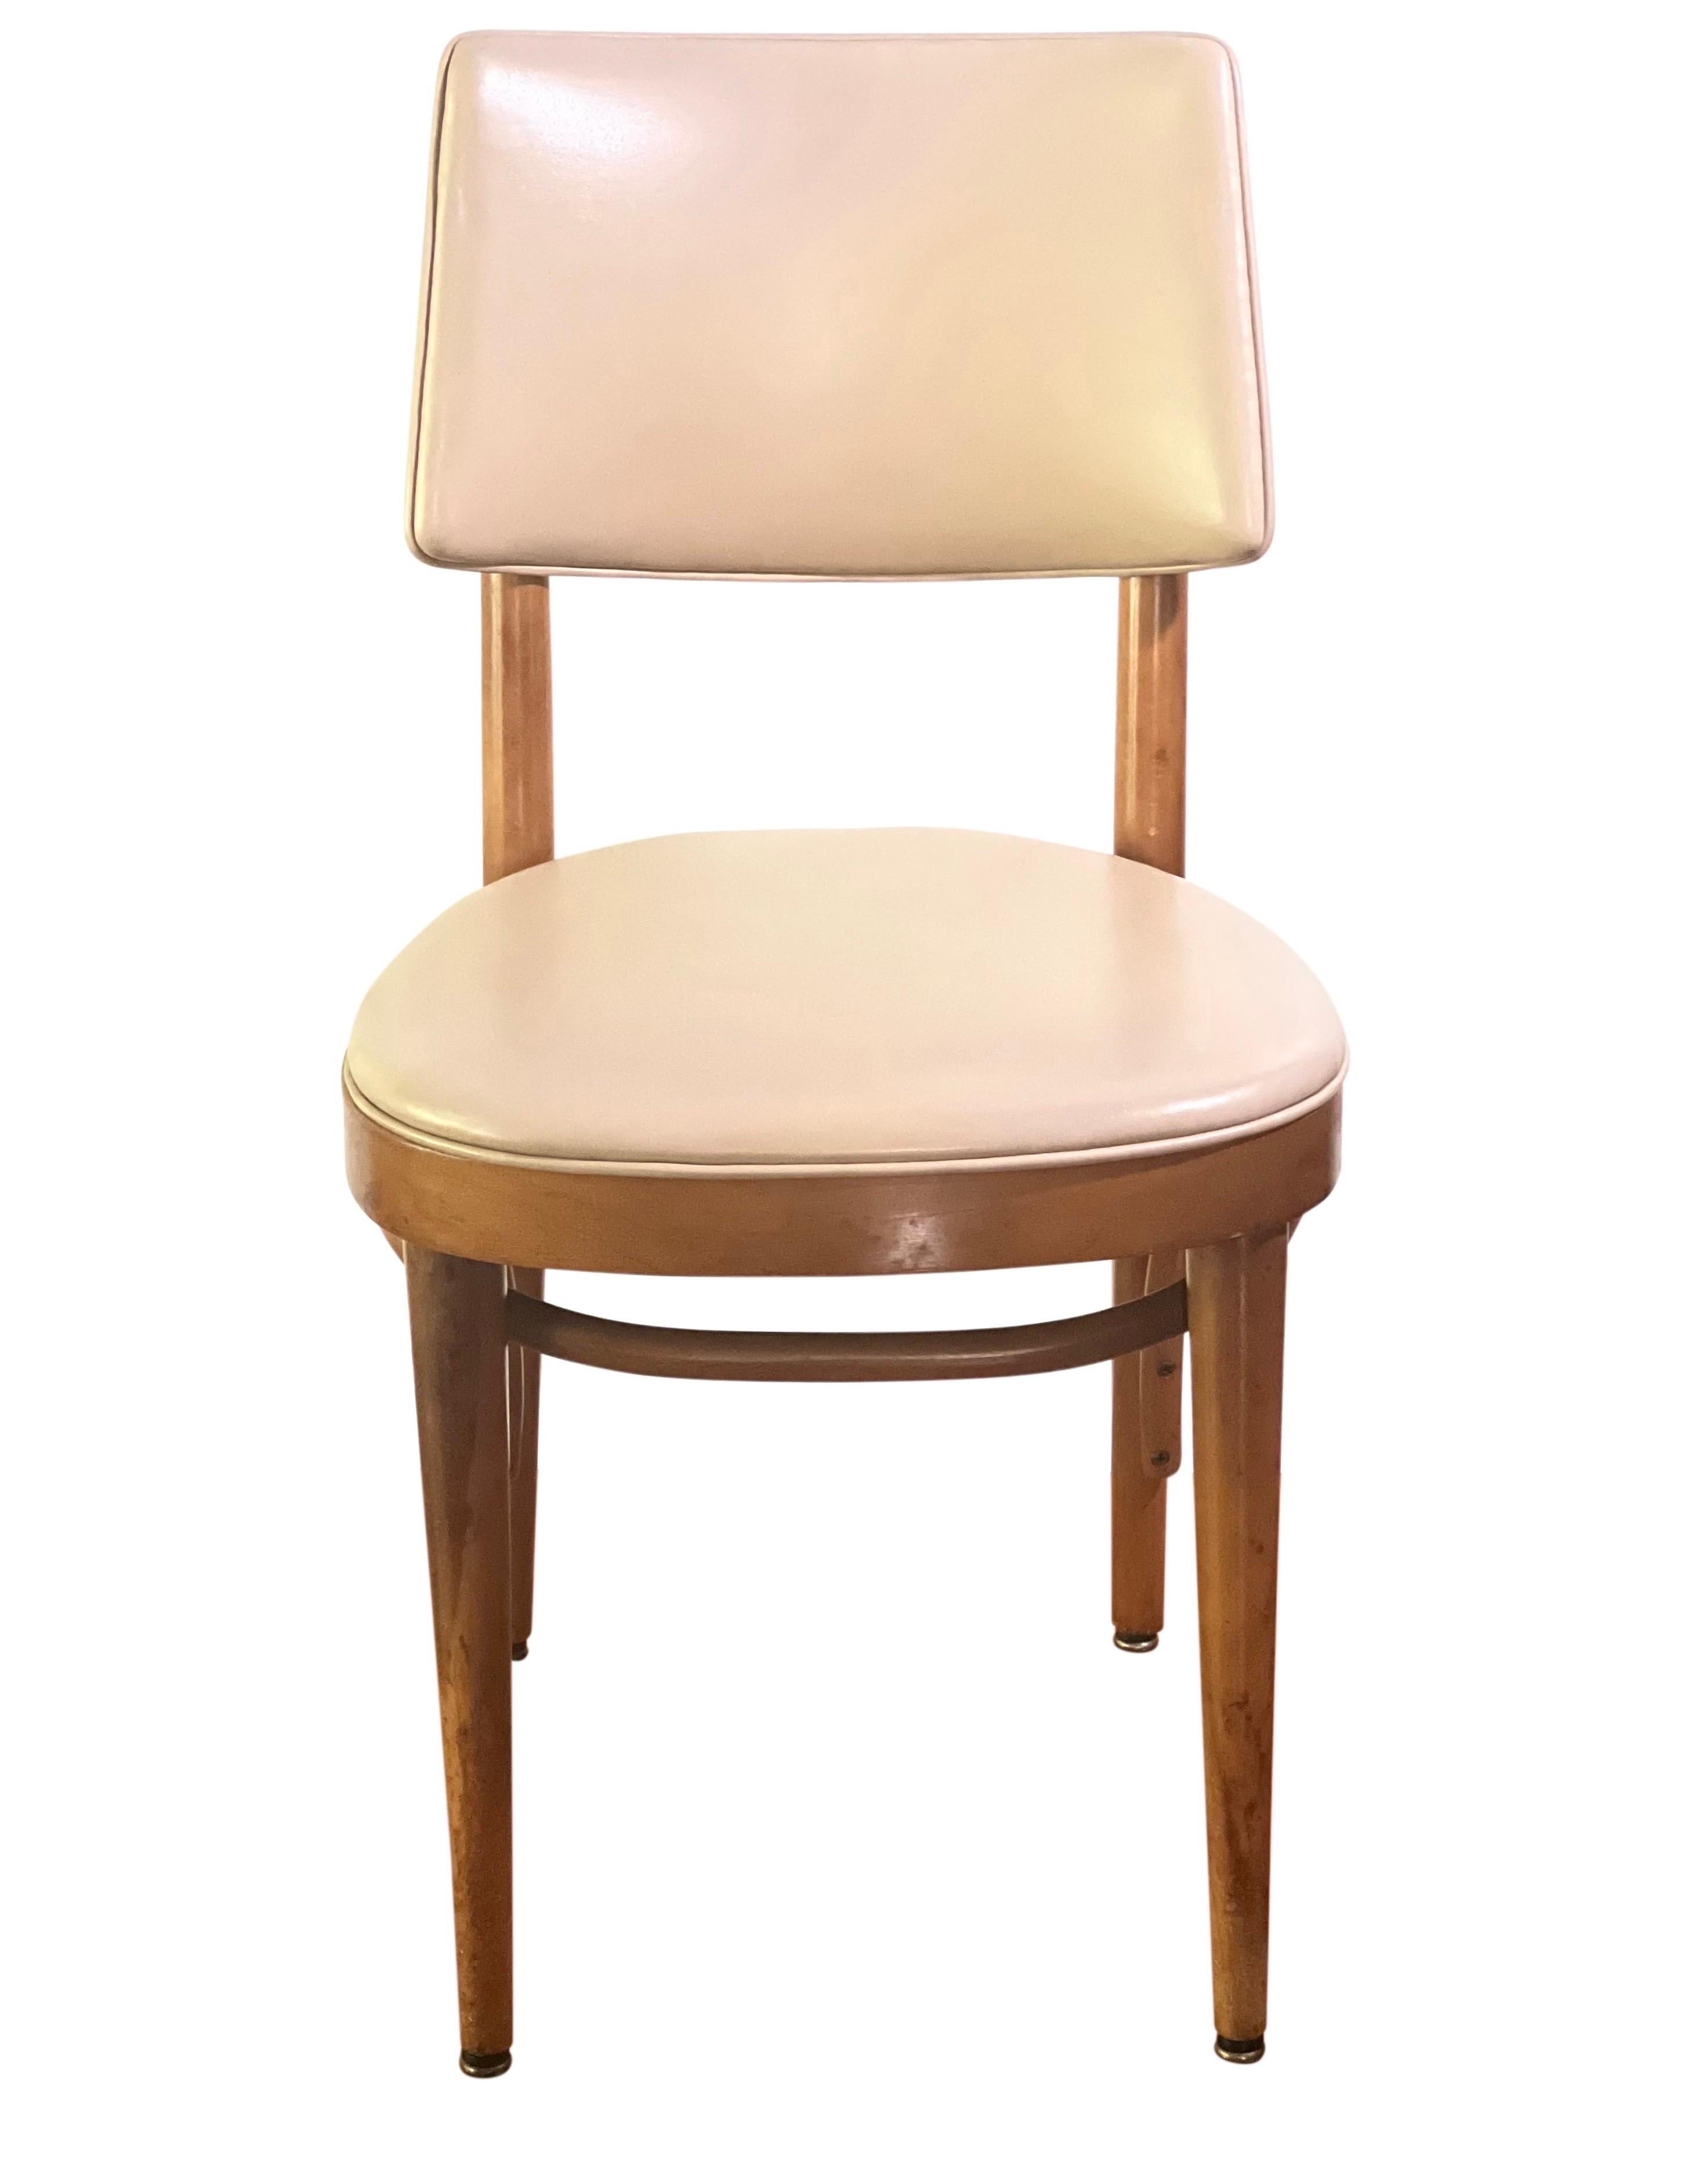 Gepolsterter Thonet Bugholzstuhl aus der Mitte des Jahrhunderts.

Einzelner Stuhl mit klassischem Mid-Century-Design und Bugholzgestell.  Neutrale cremefarbene Naugahyde-Polsterung in sehr gutem Zustand.  Er verfügt über eine großzügige, bequeme